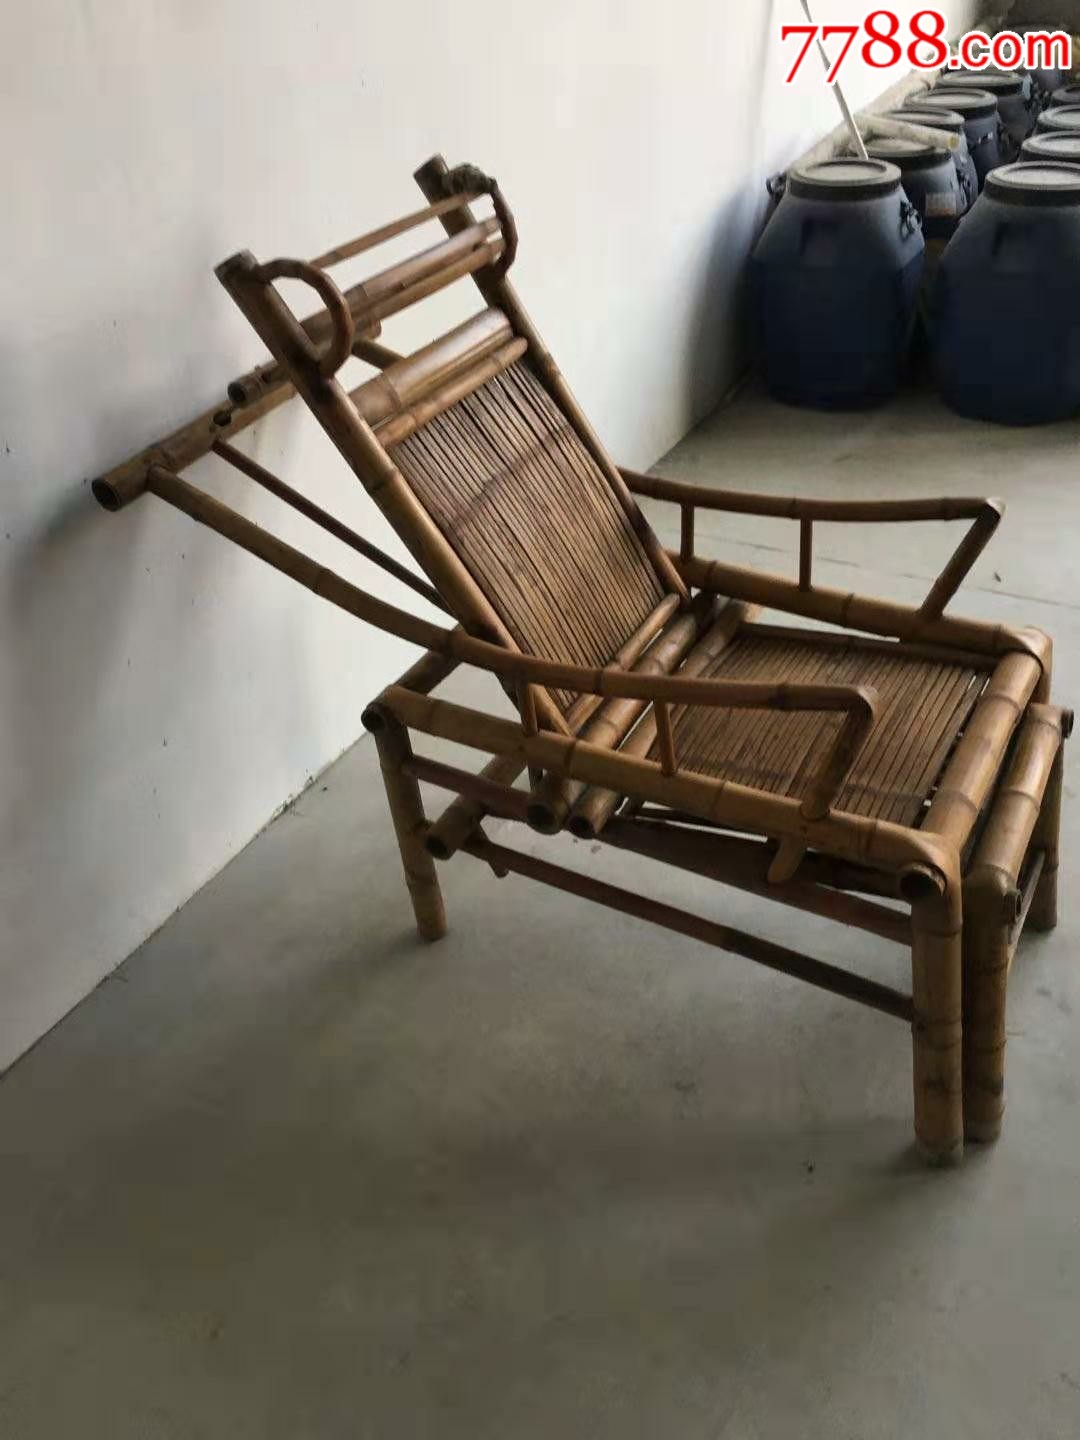 民国时期竹制躺椅折叠椅